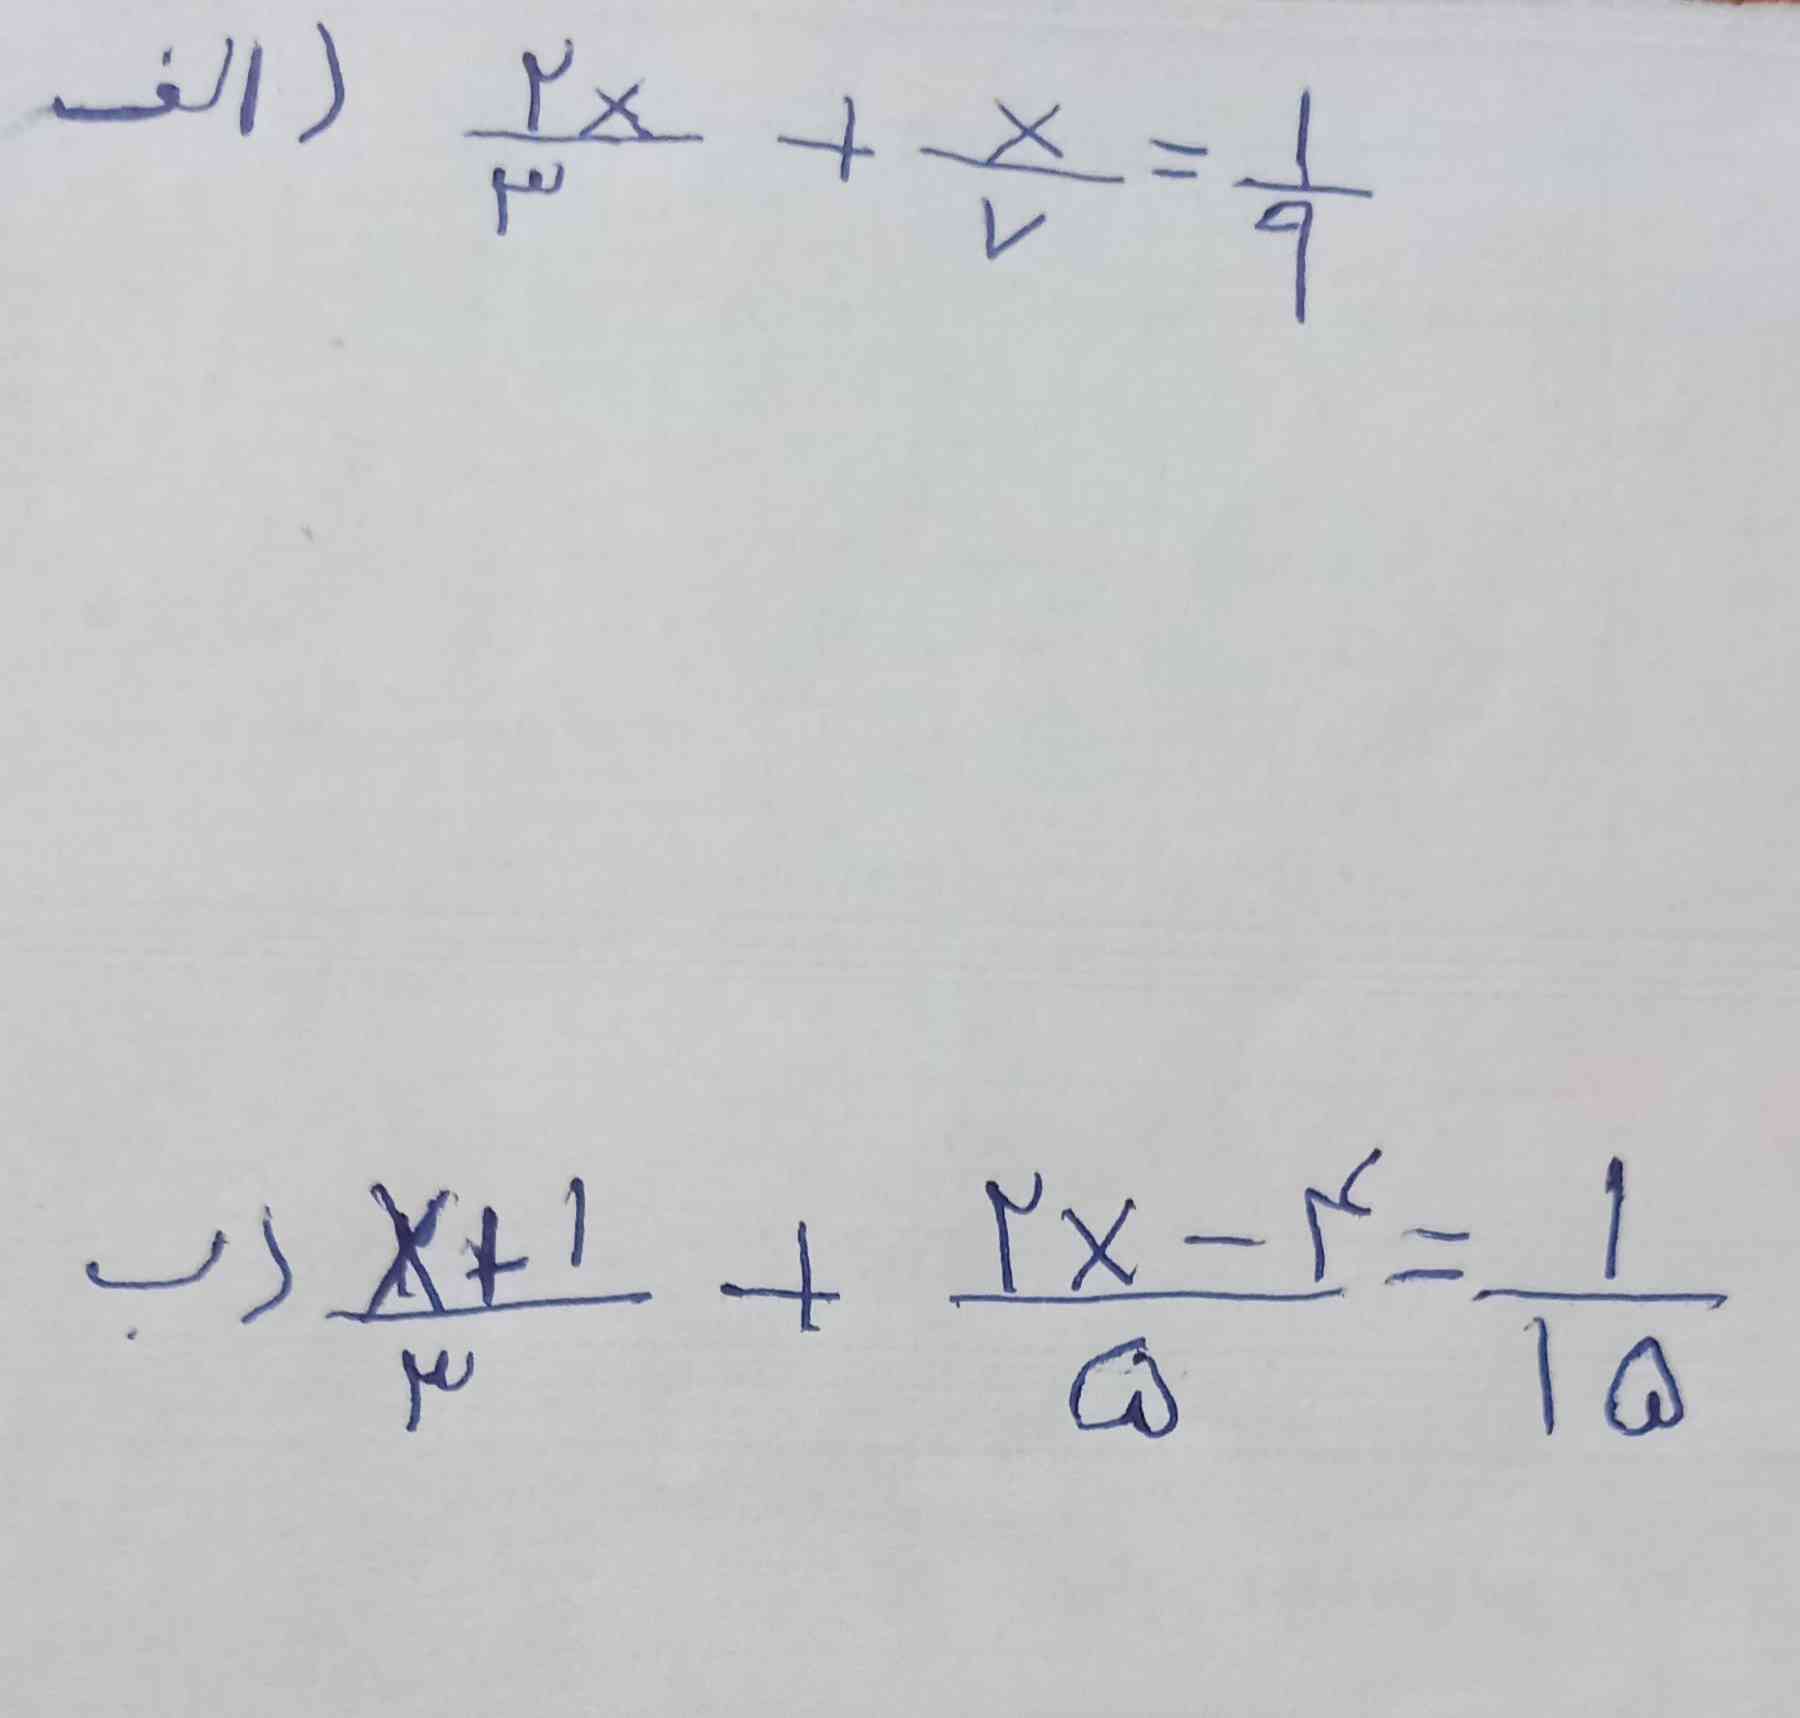 هر کی  زود ترجواب این معادله رو حساب کن  بهش معرکه میدم وبه بقیه کسانی هم که دیر تر جواب دادند تاج میدم👑👑